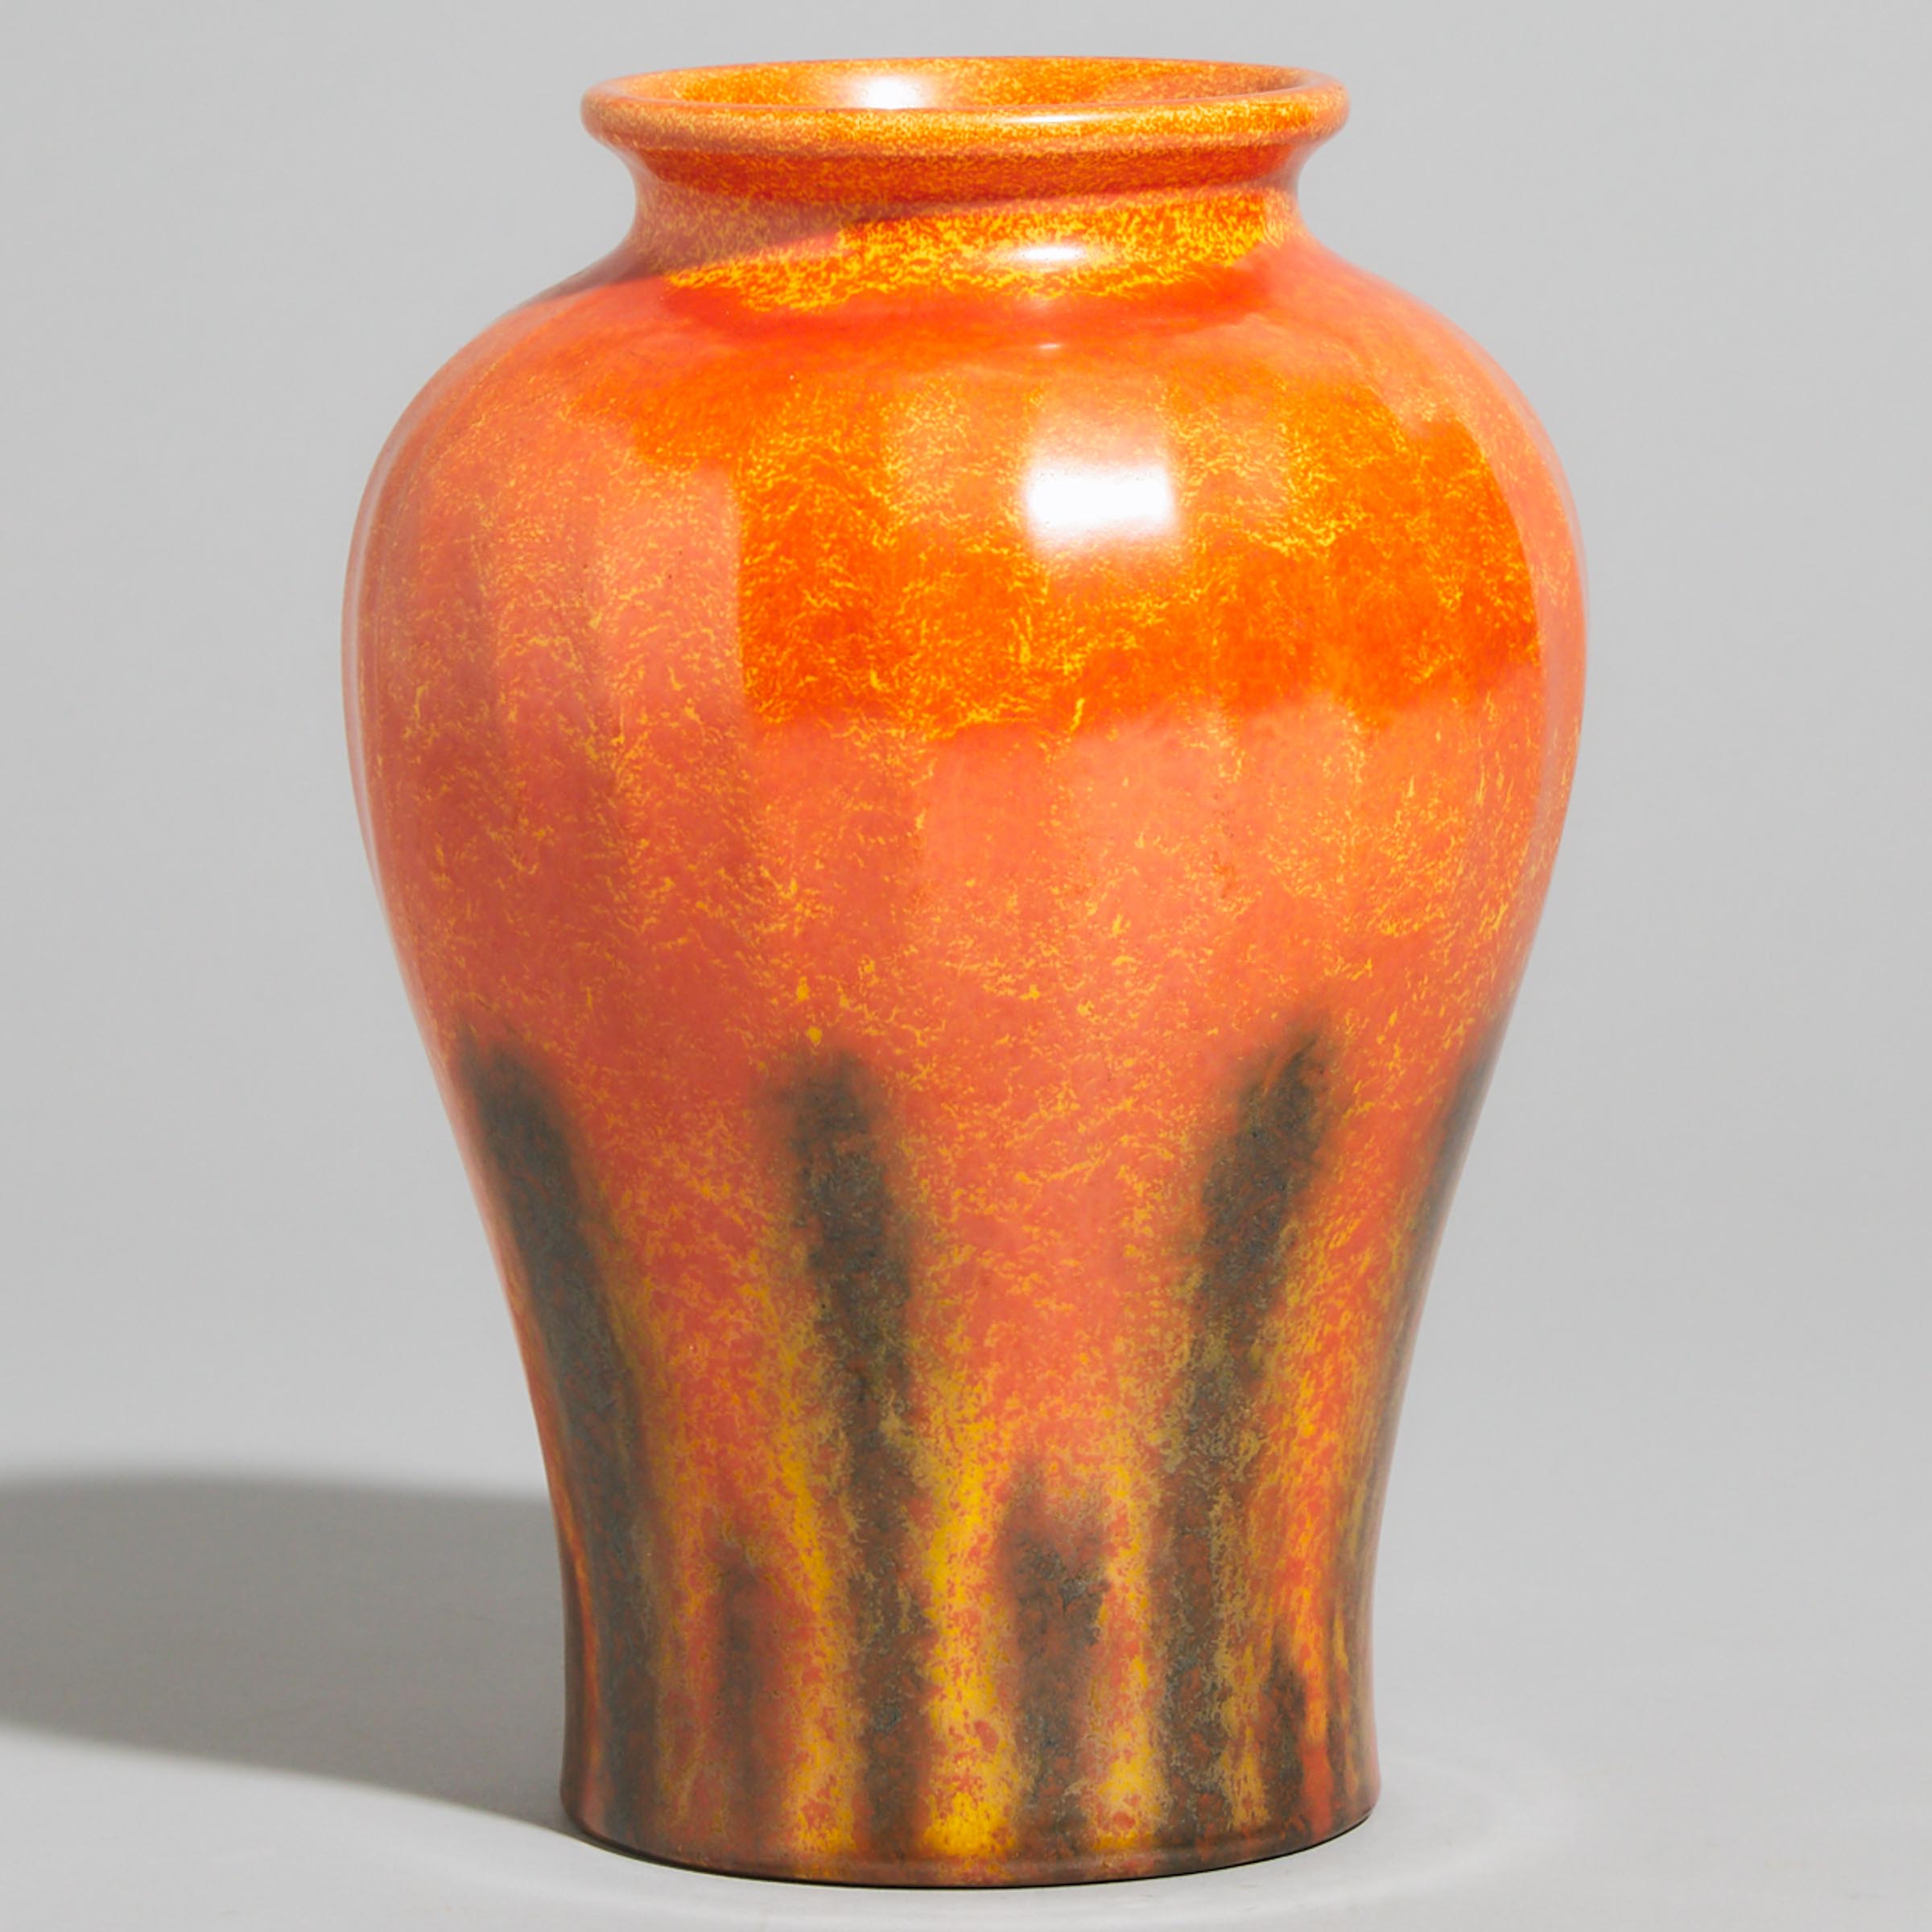 Pilkington's Royal Lancastrian Mottled Orange Glazed Vase, c.1920-38